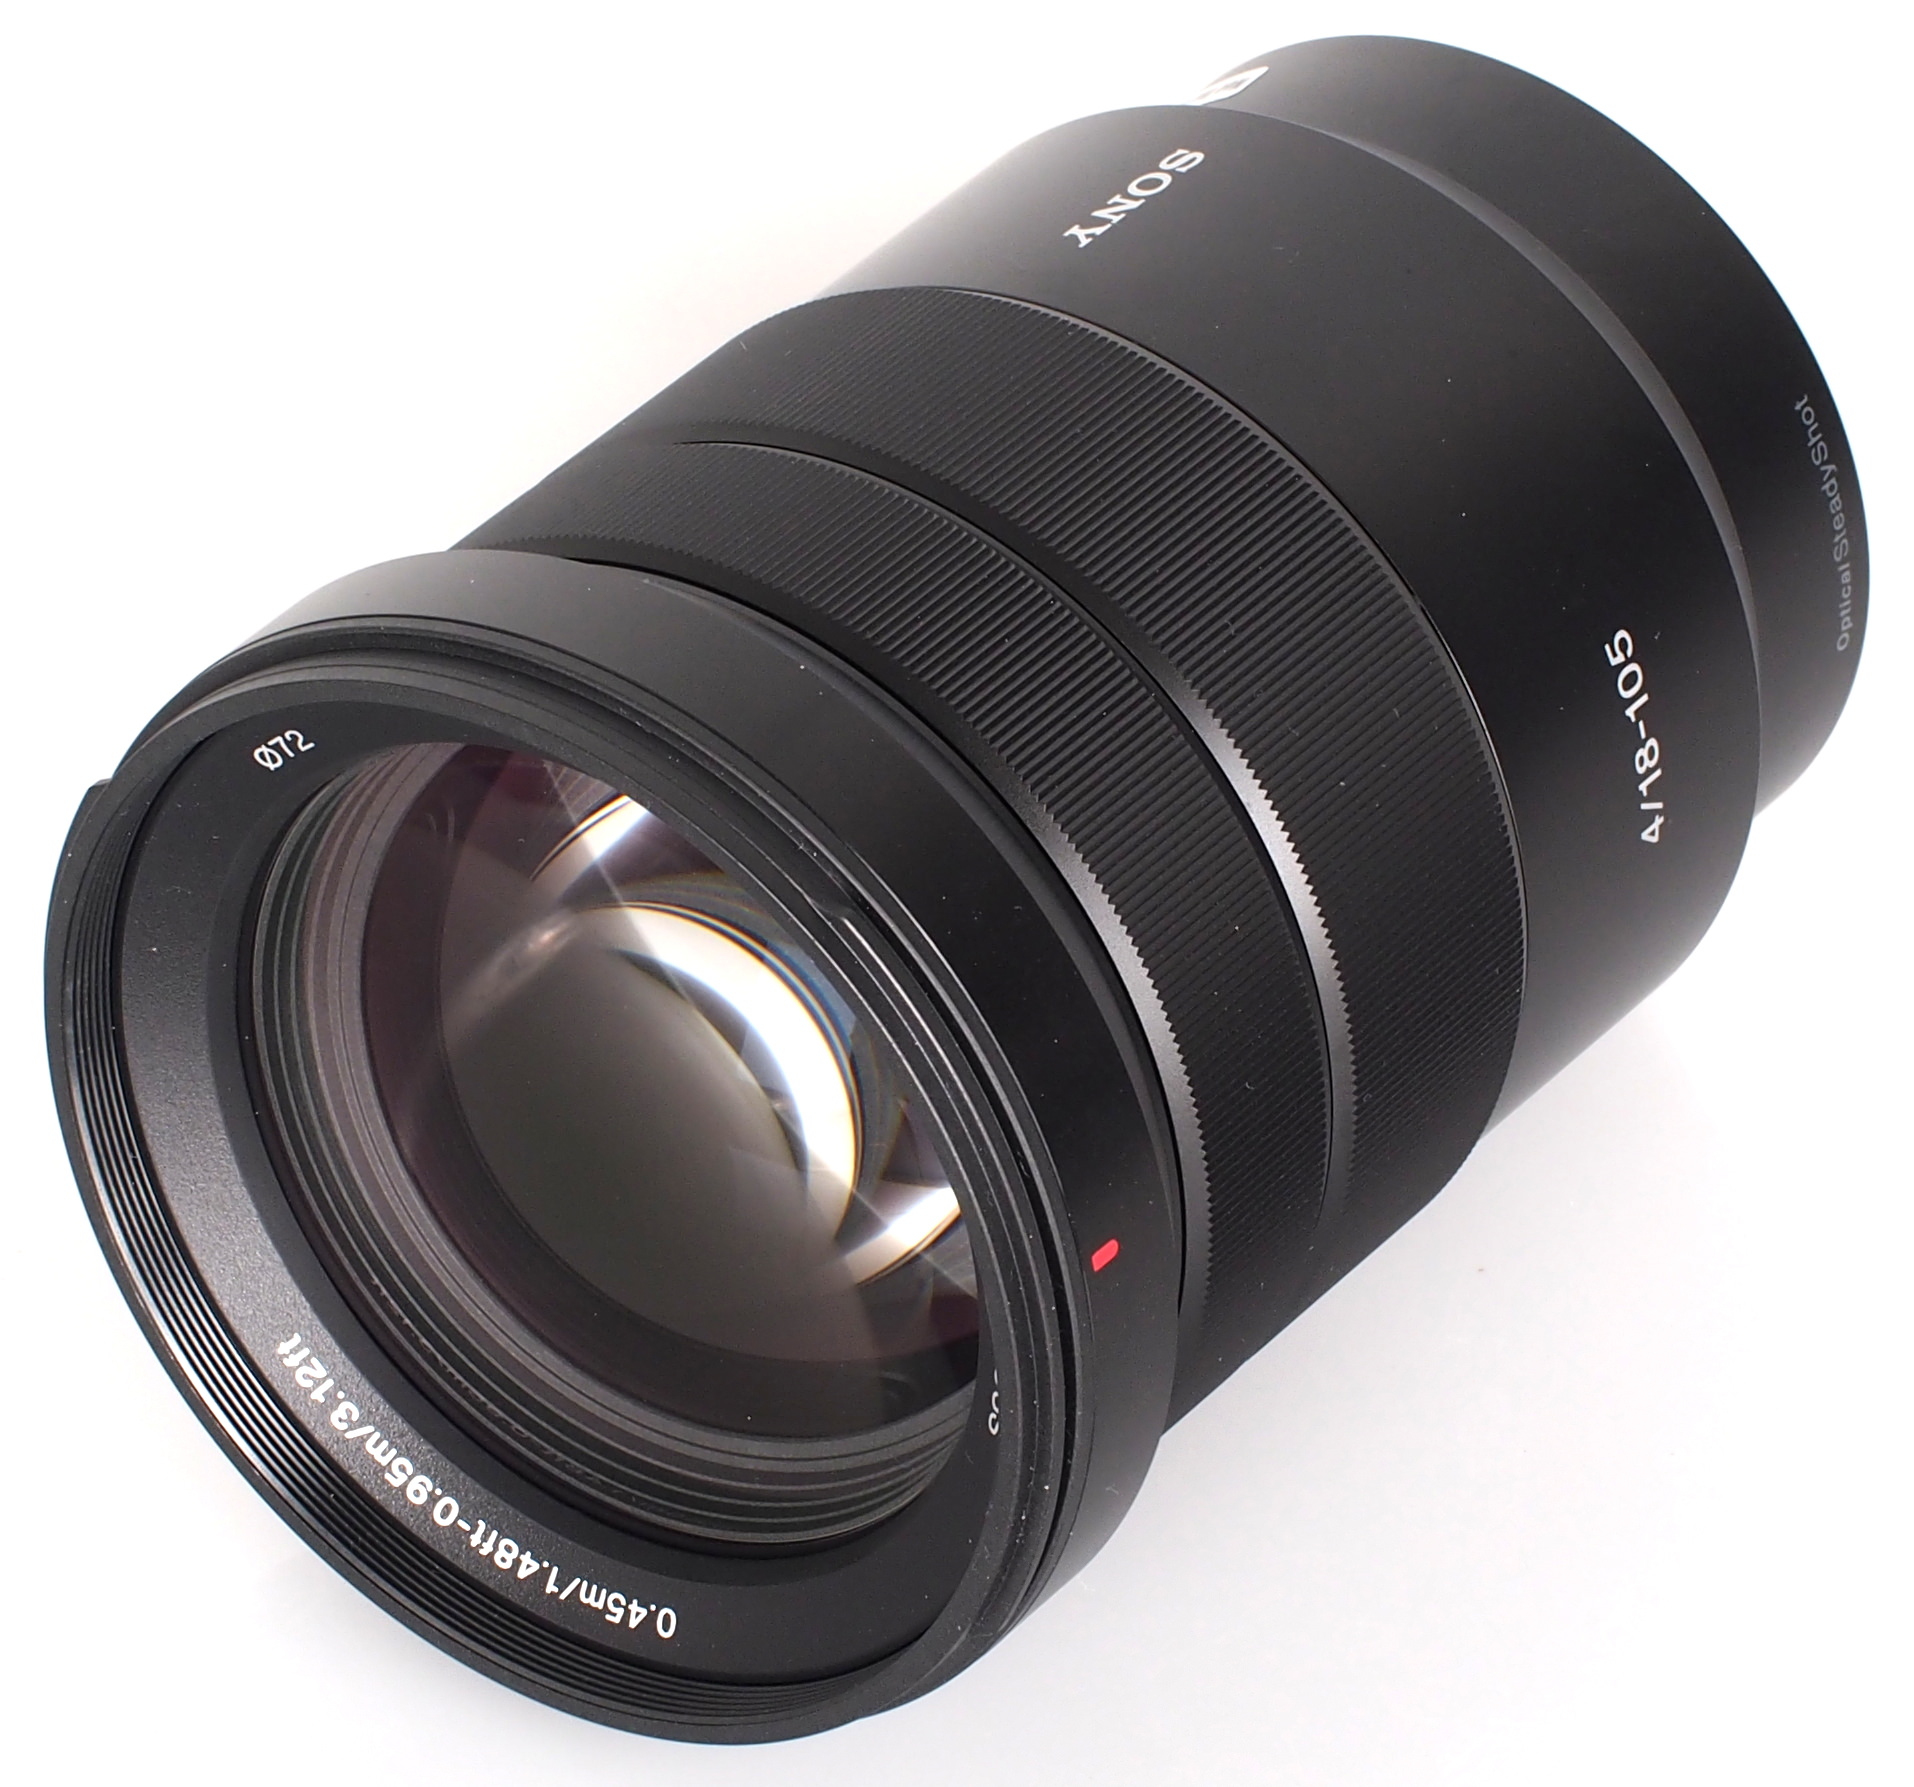 Sony E 18-105mm f/4 PZ G OSS Lens Review